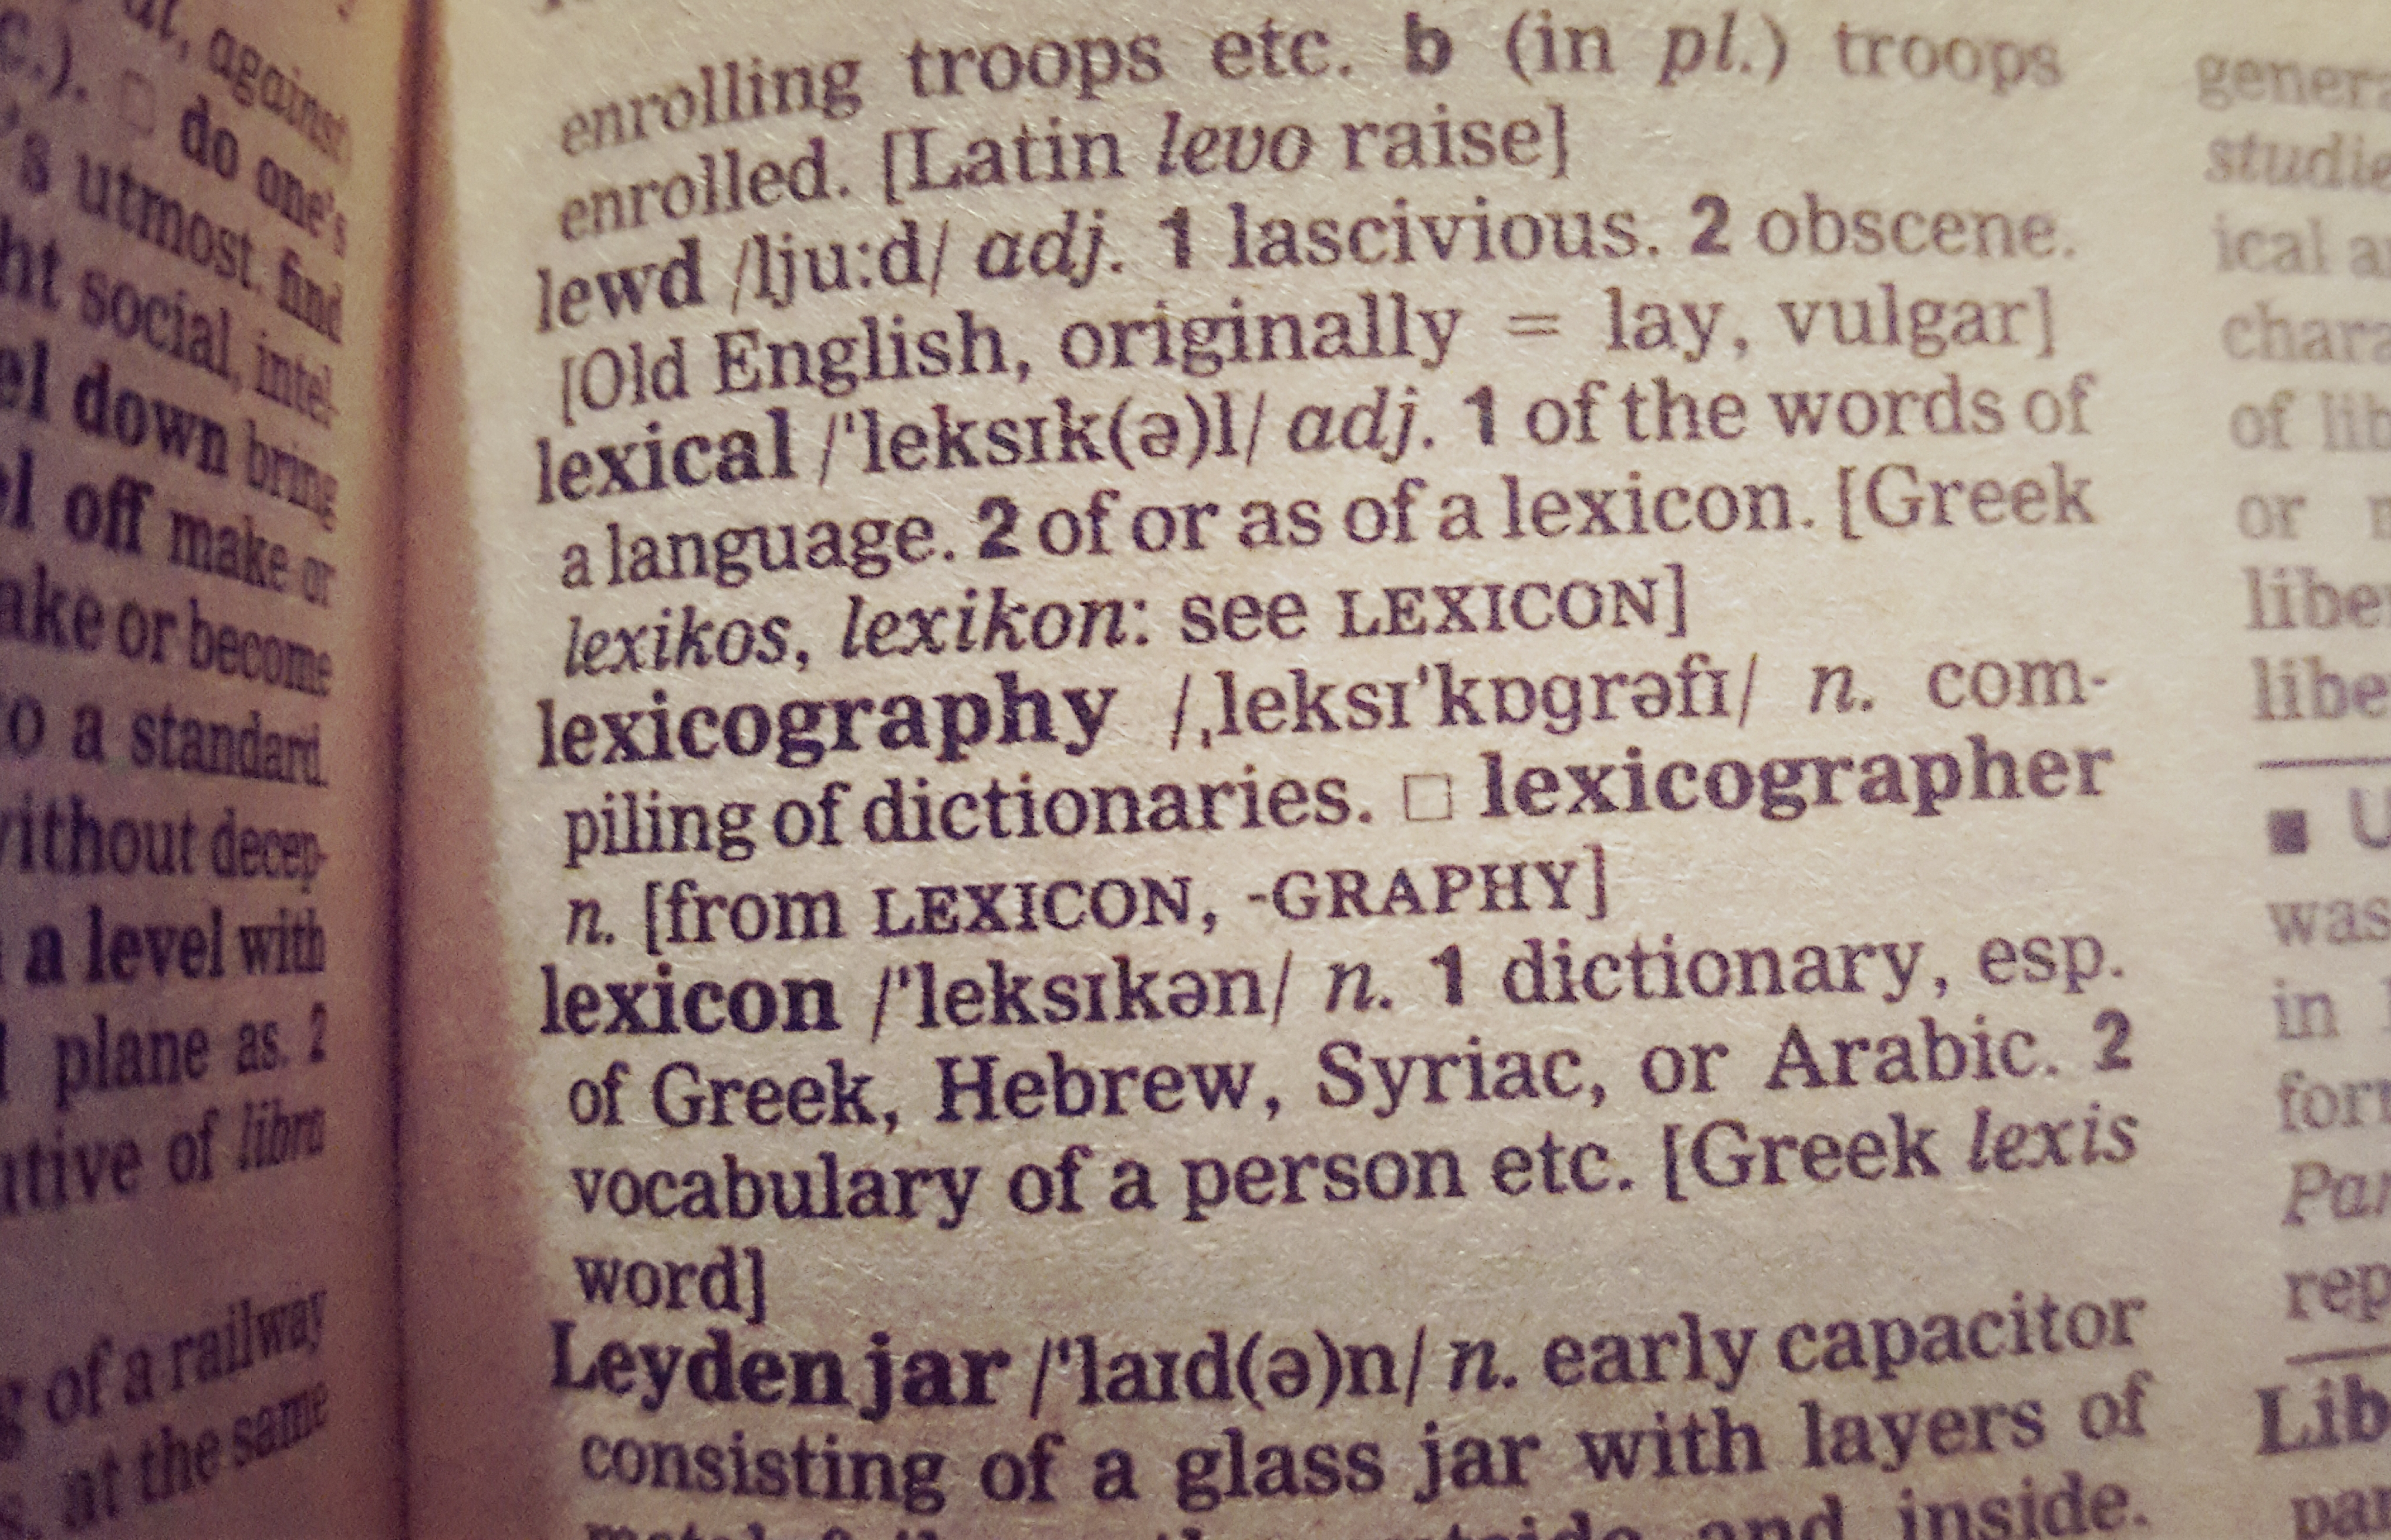 lexicographer